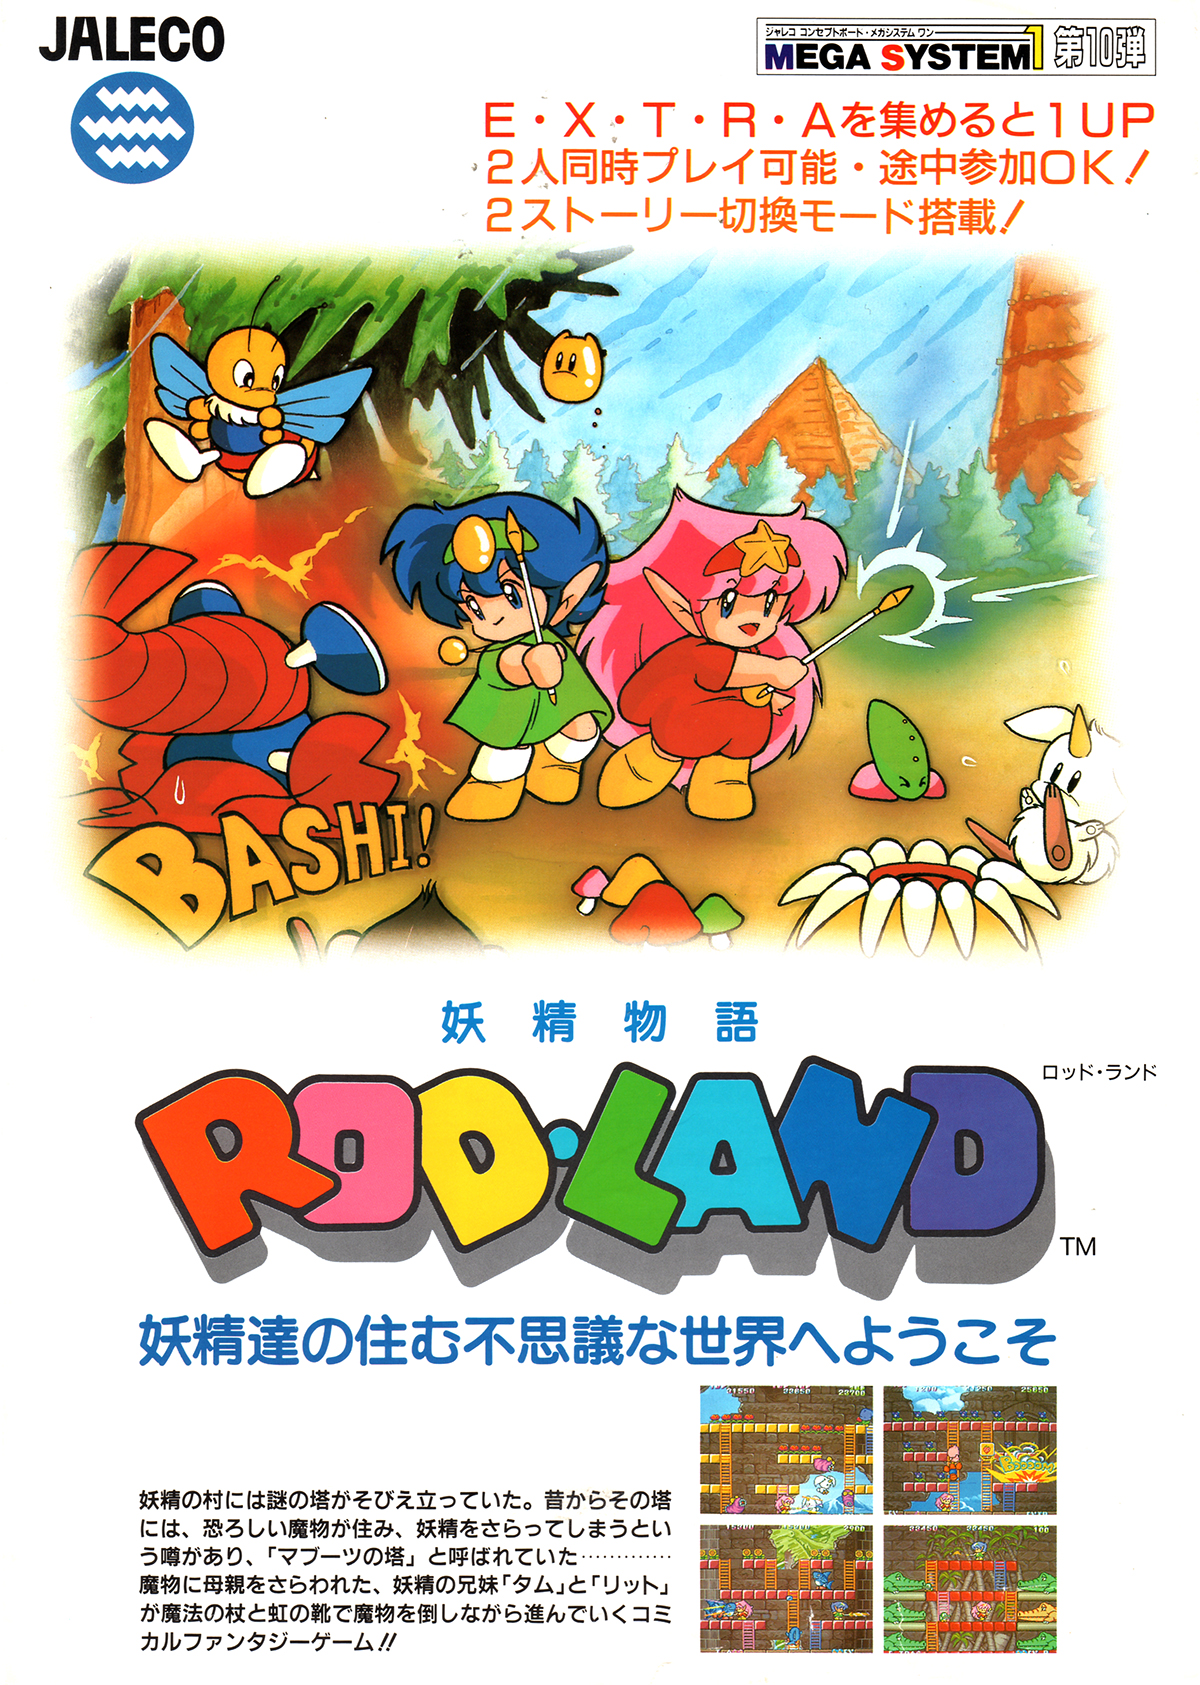 ジャレコ「ロッドランド」チラシ/Jaleco "Rod Land" Flyer